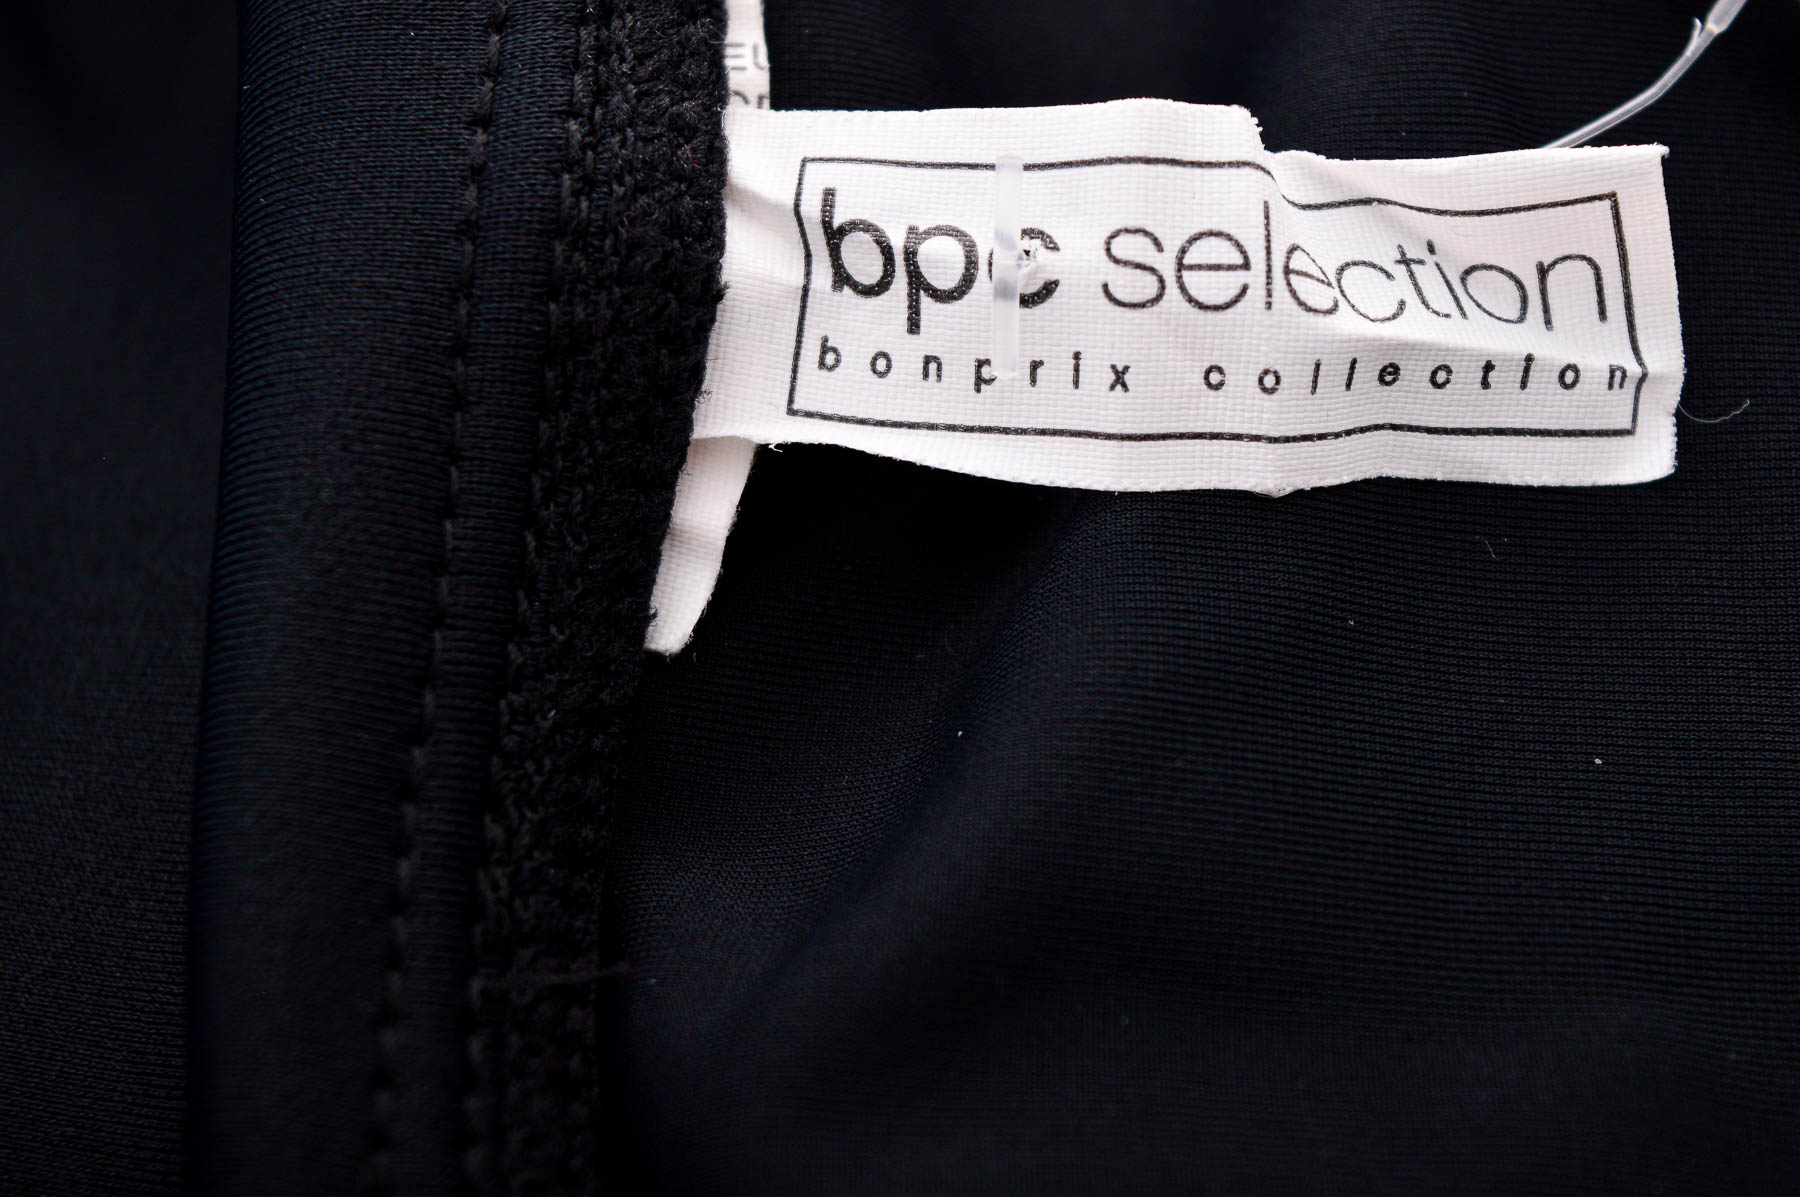 Пола - панталон - Bpc selection bonprix collection - 2